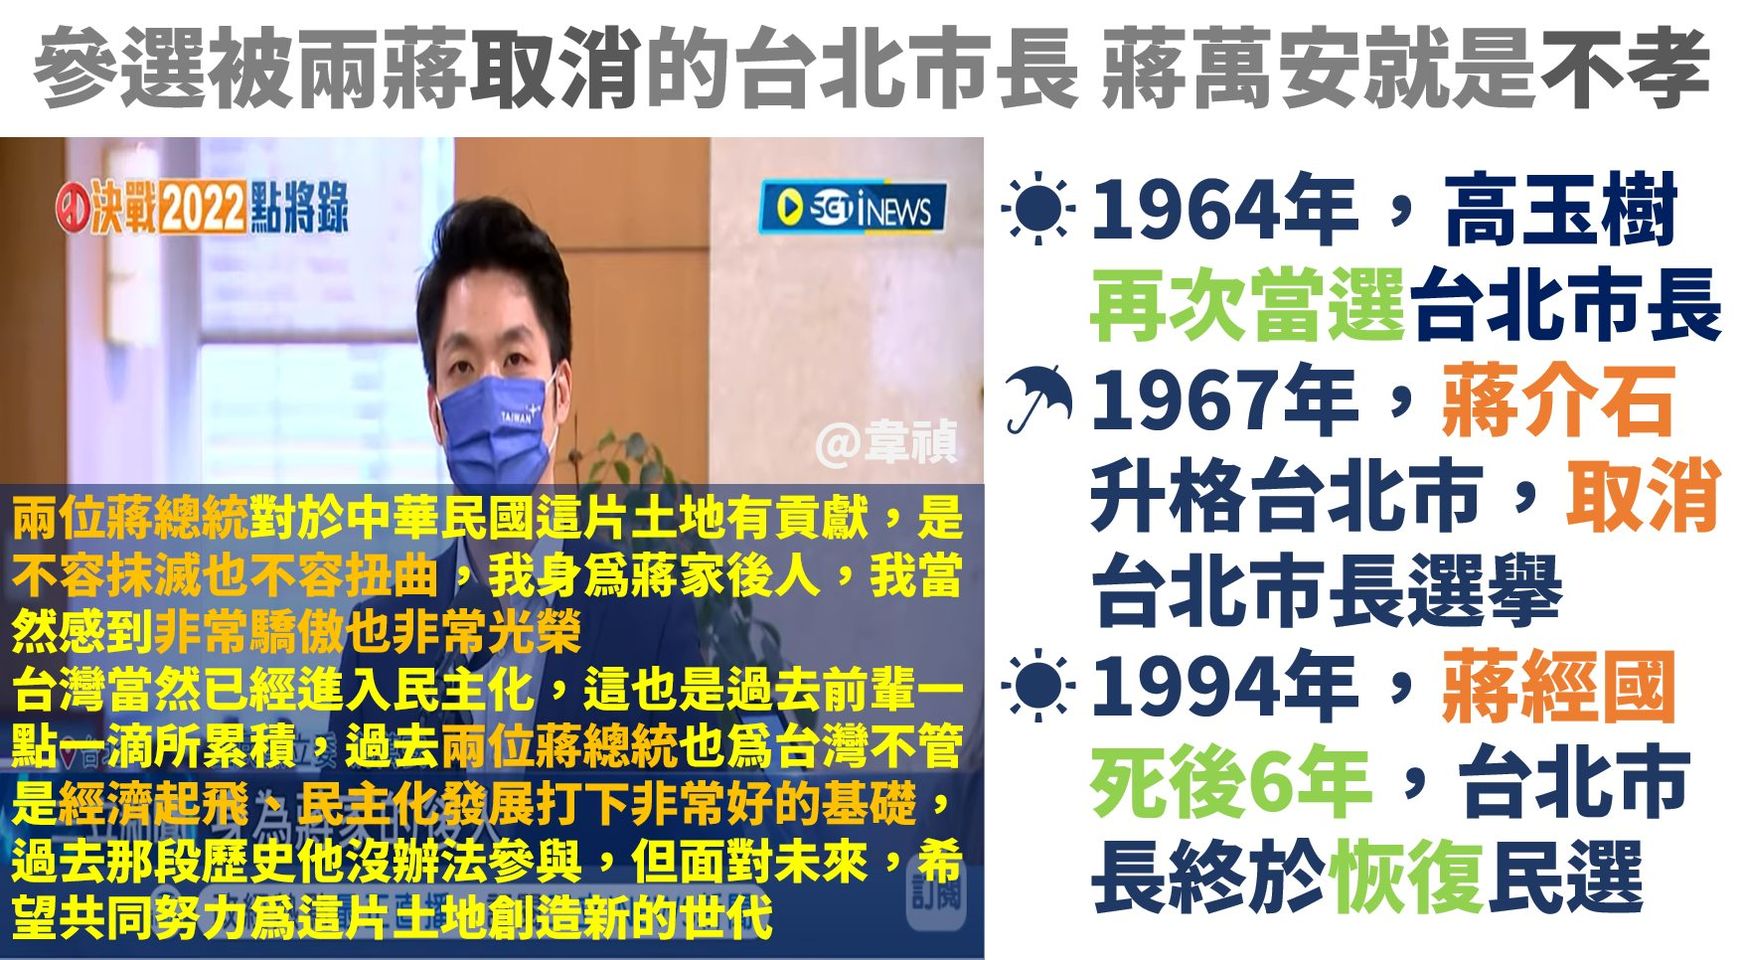 蔣萬安參選台北市長 就是踐踏兩蔣遺志